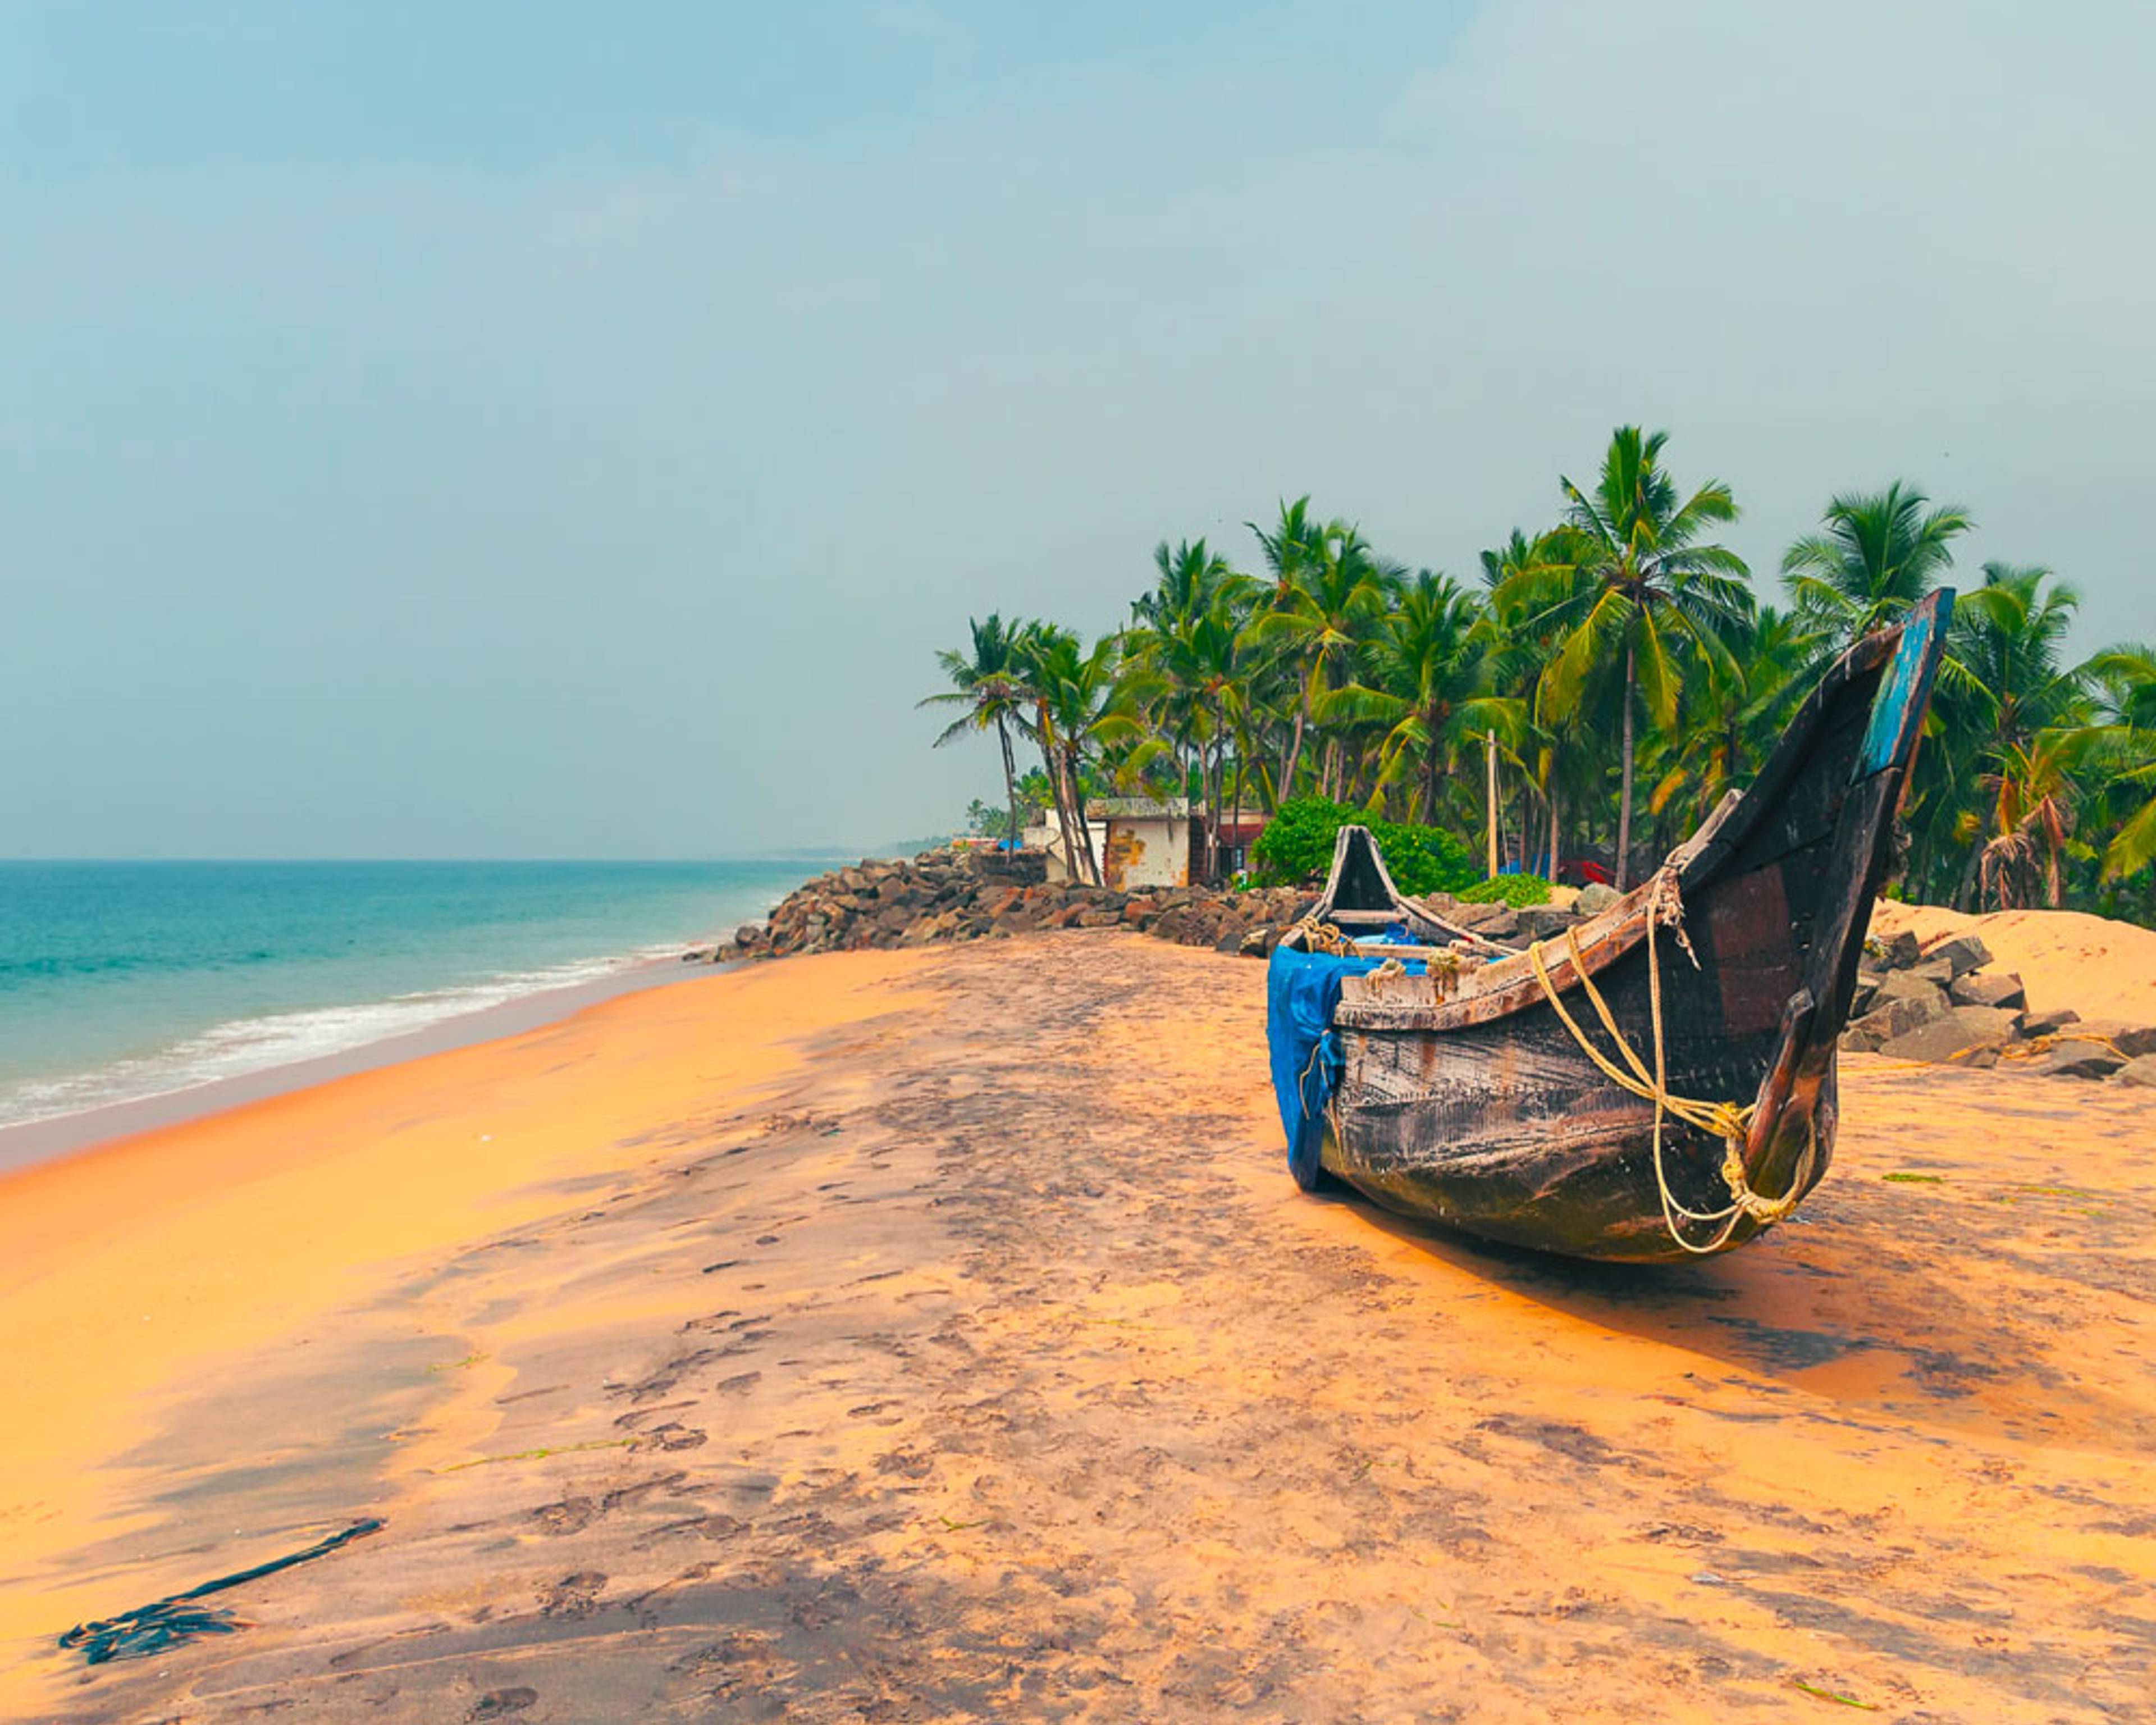 Découvrez les plus belles plages lors de votre voyage en Inde 100% sur mesure